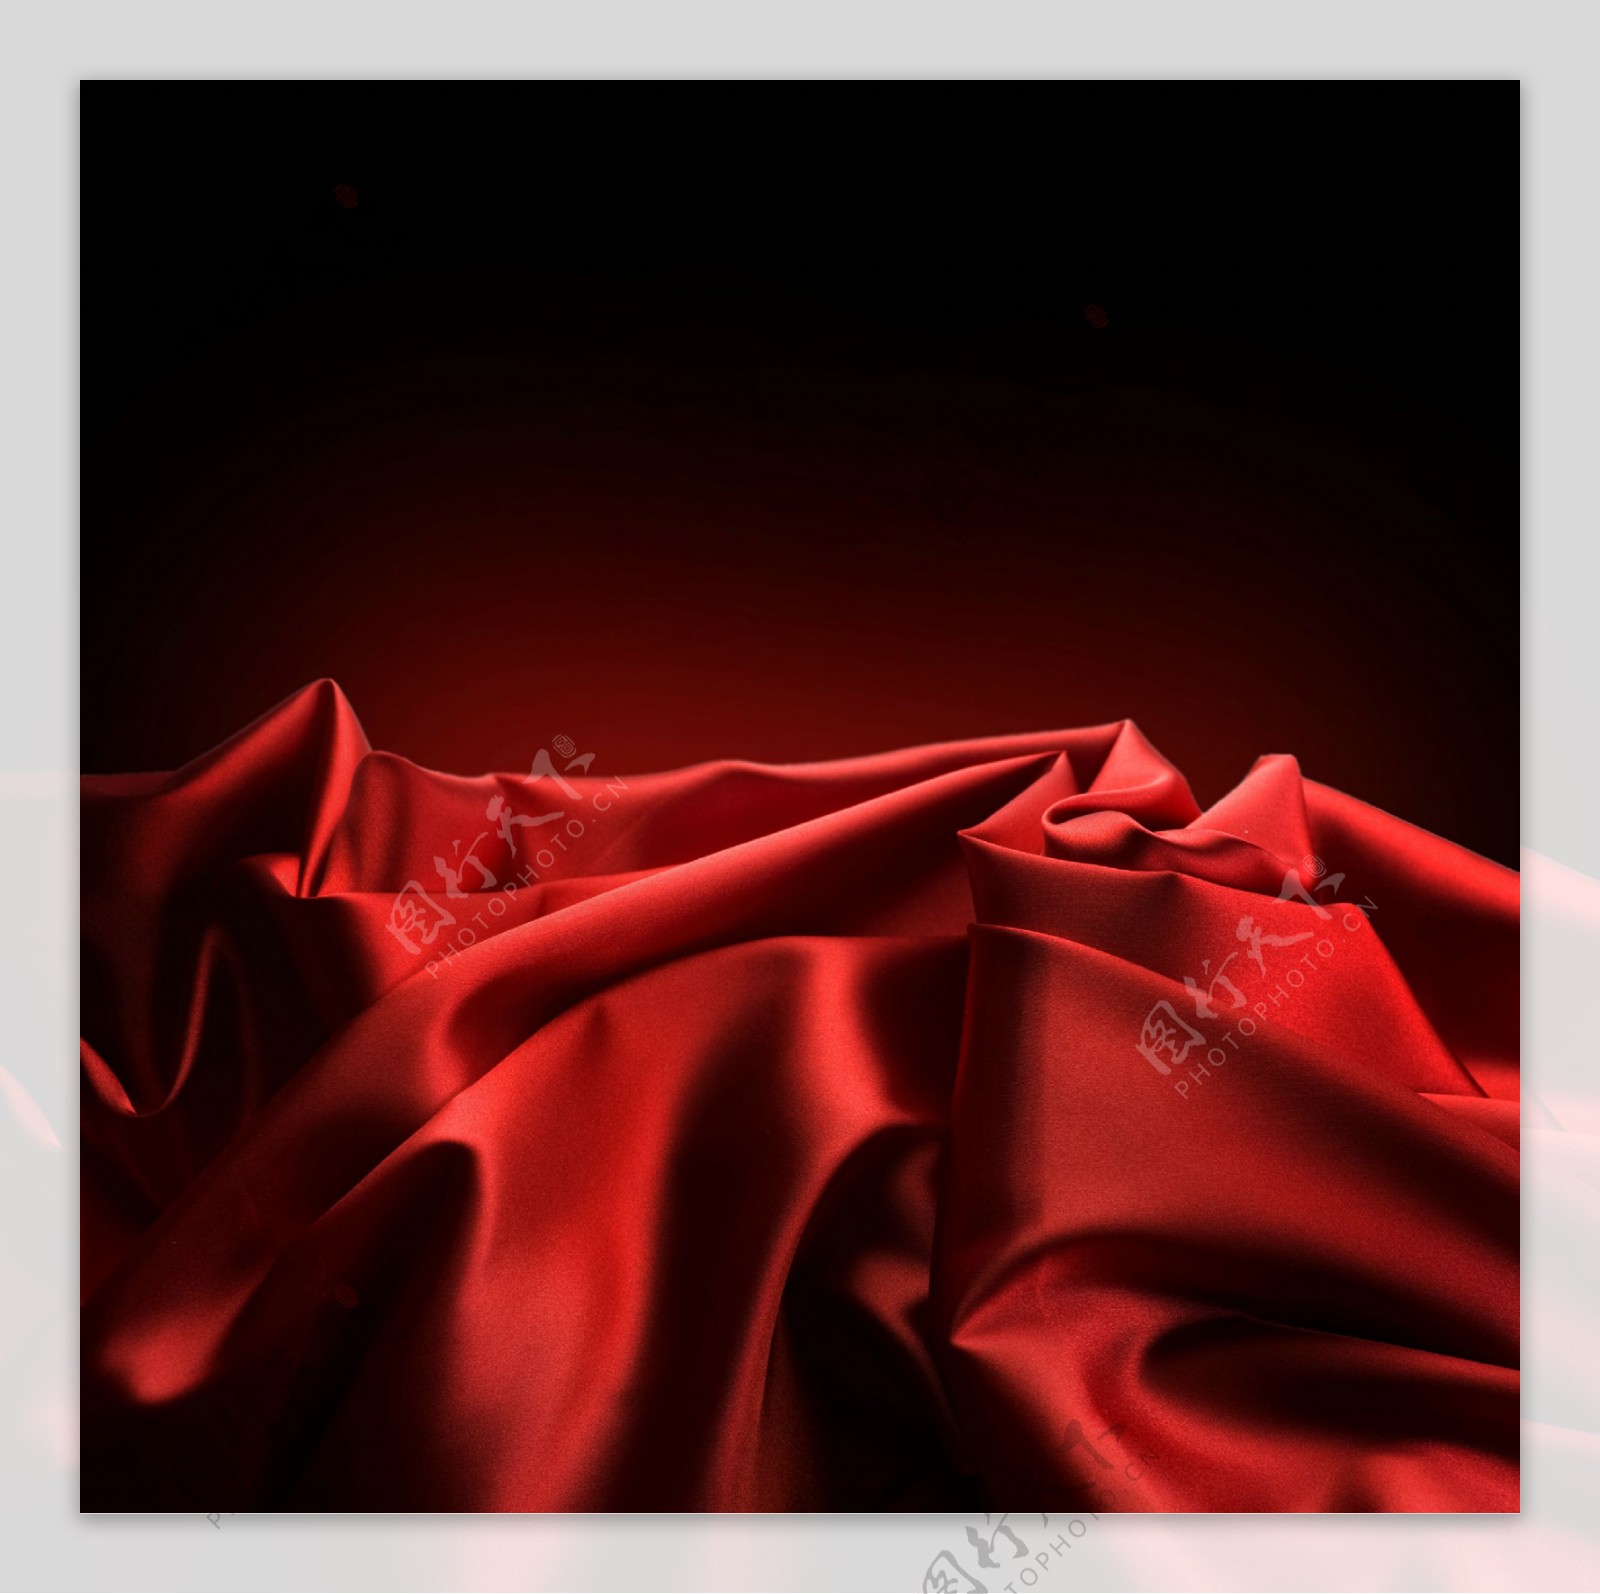 红色丝绸褶皱背景图片